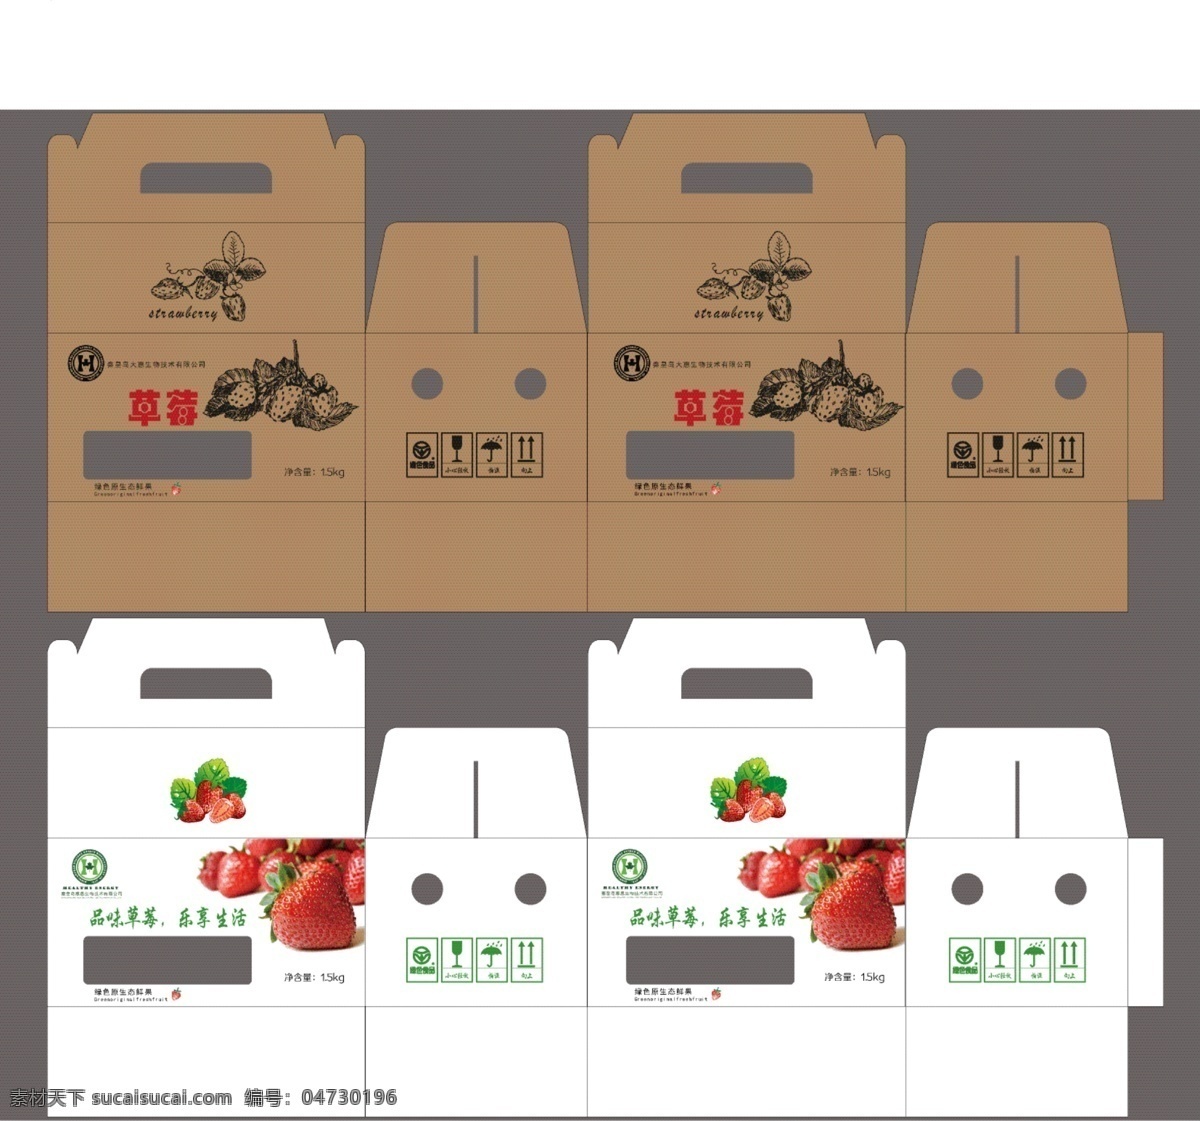 包装盒 草莓 展开 图 包装盒草莓 包装盒展开图 包装礼盒 产品包装